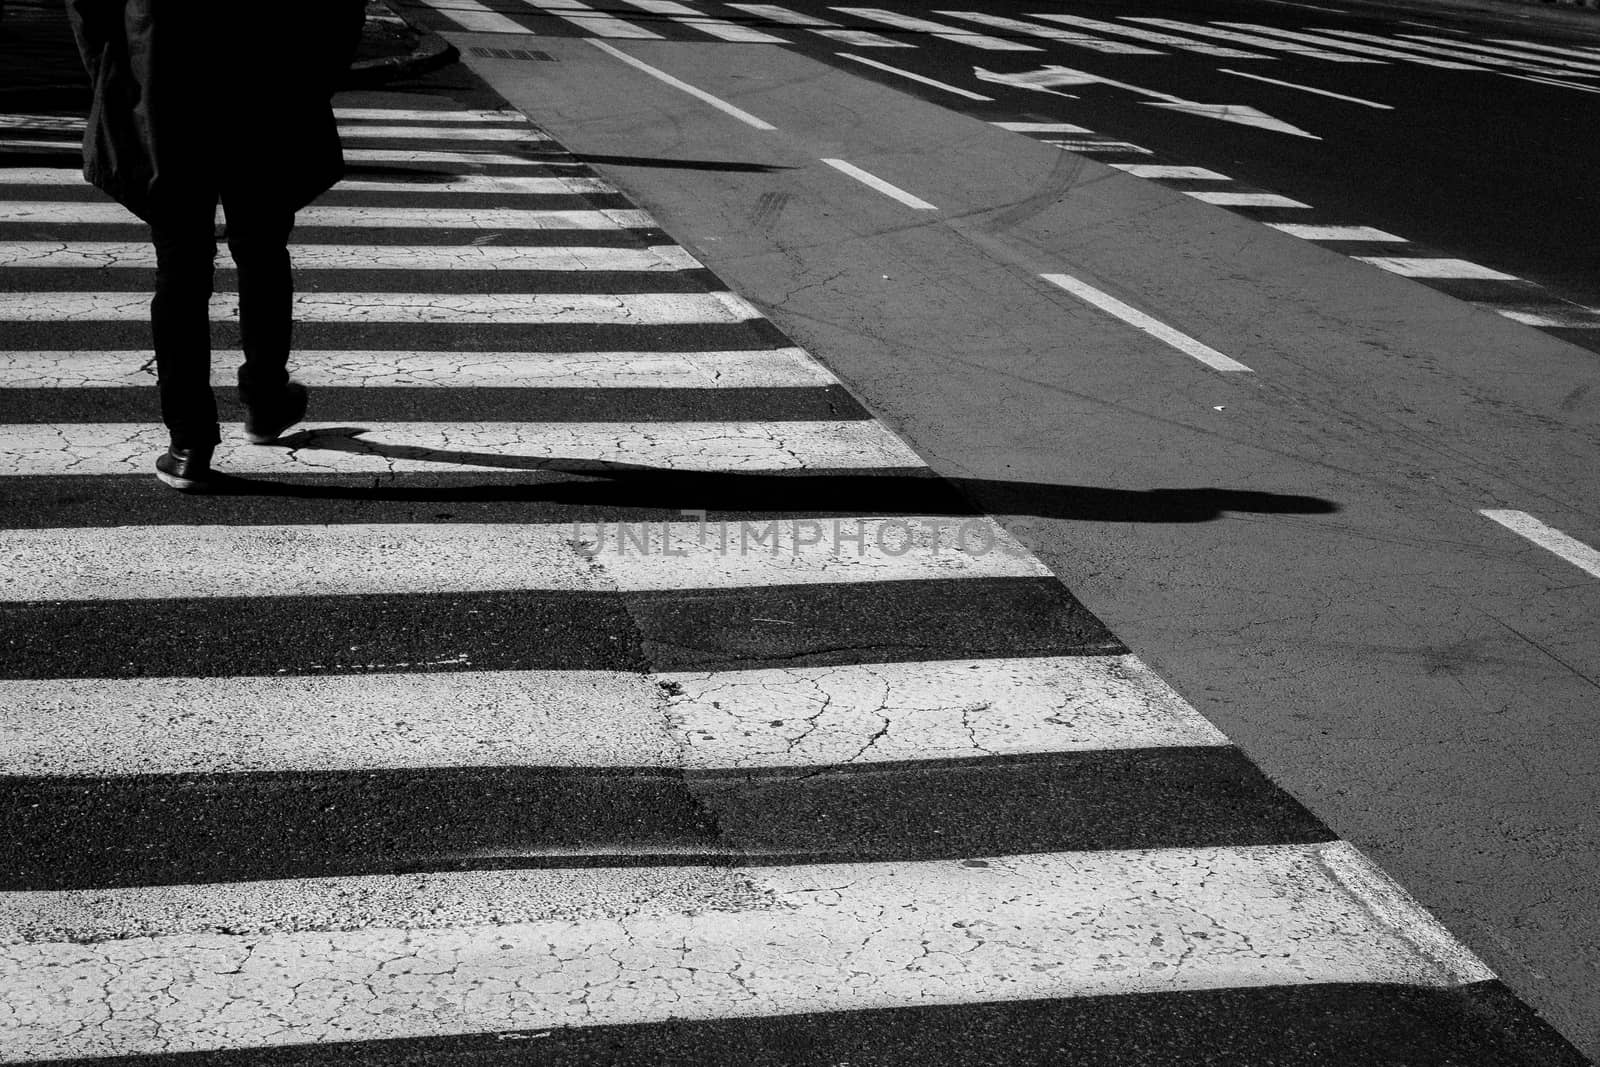 Men walking on zebra crossing street.